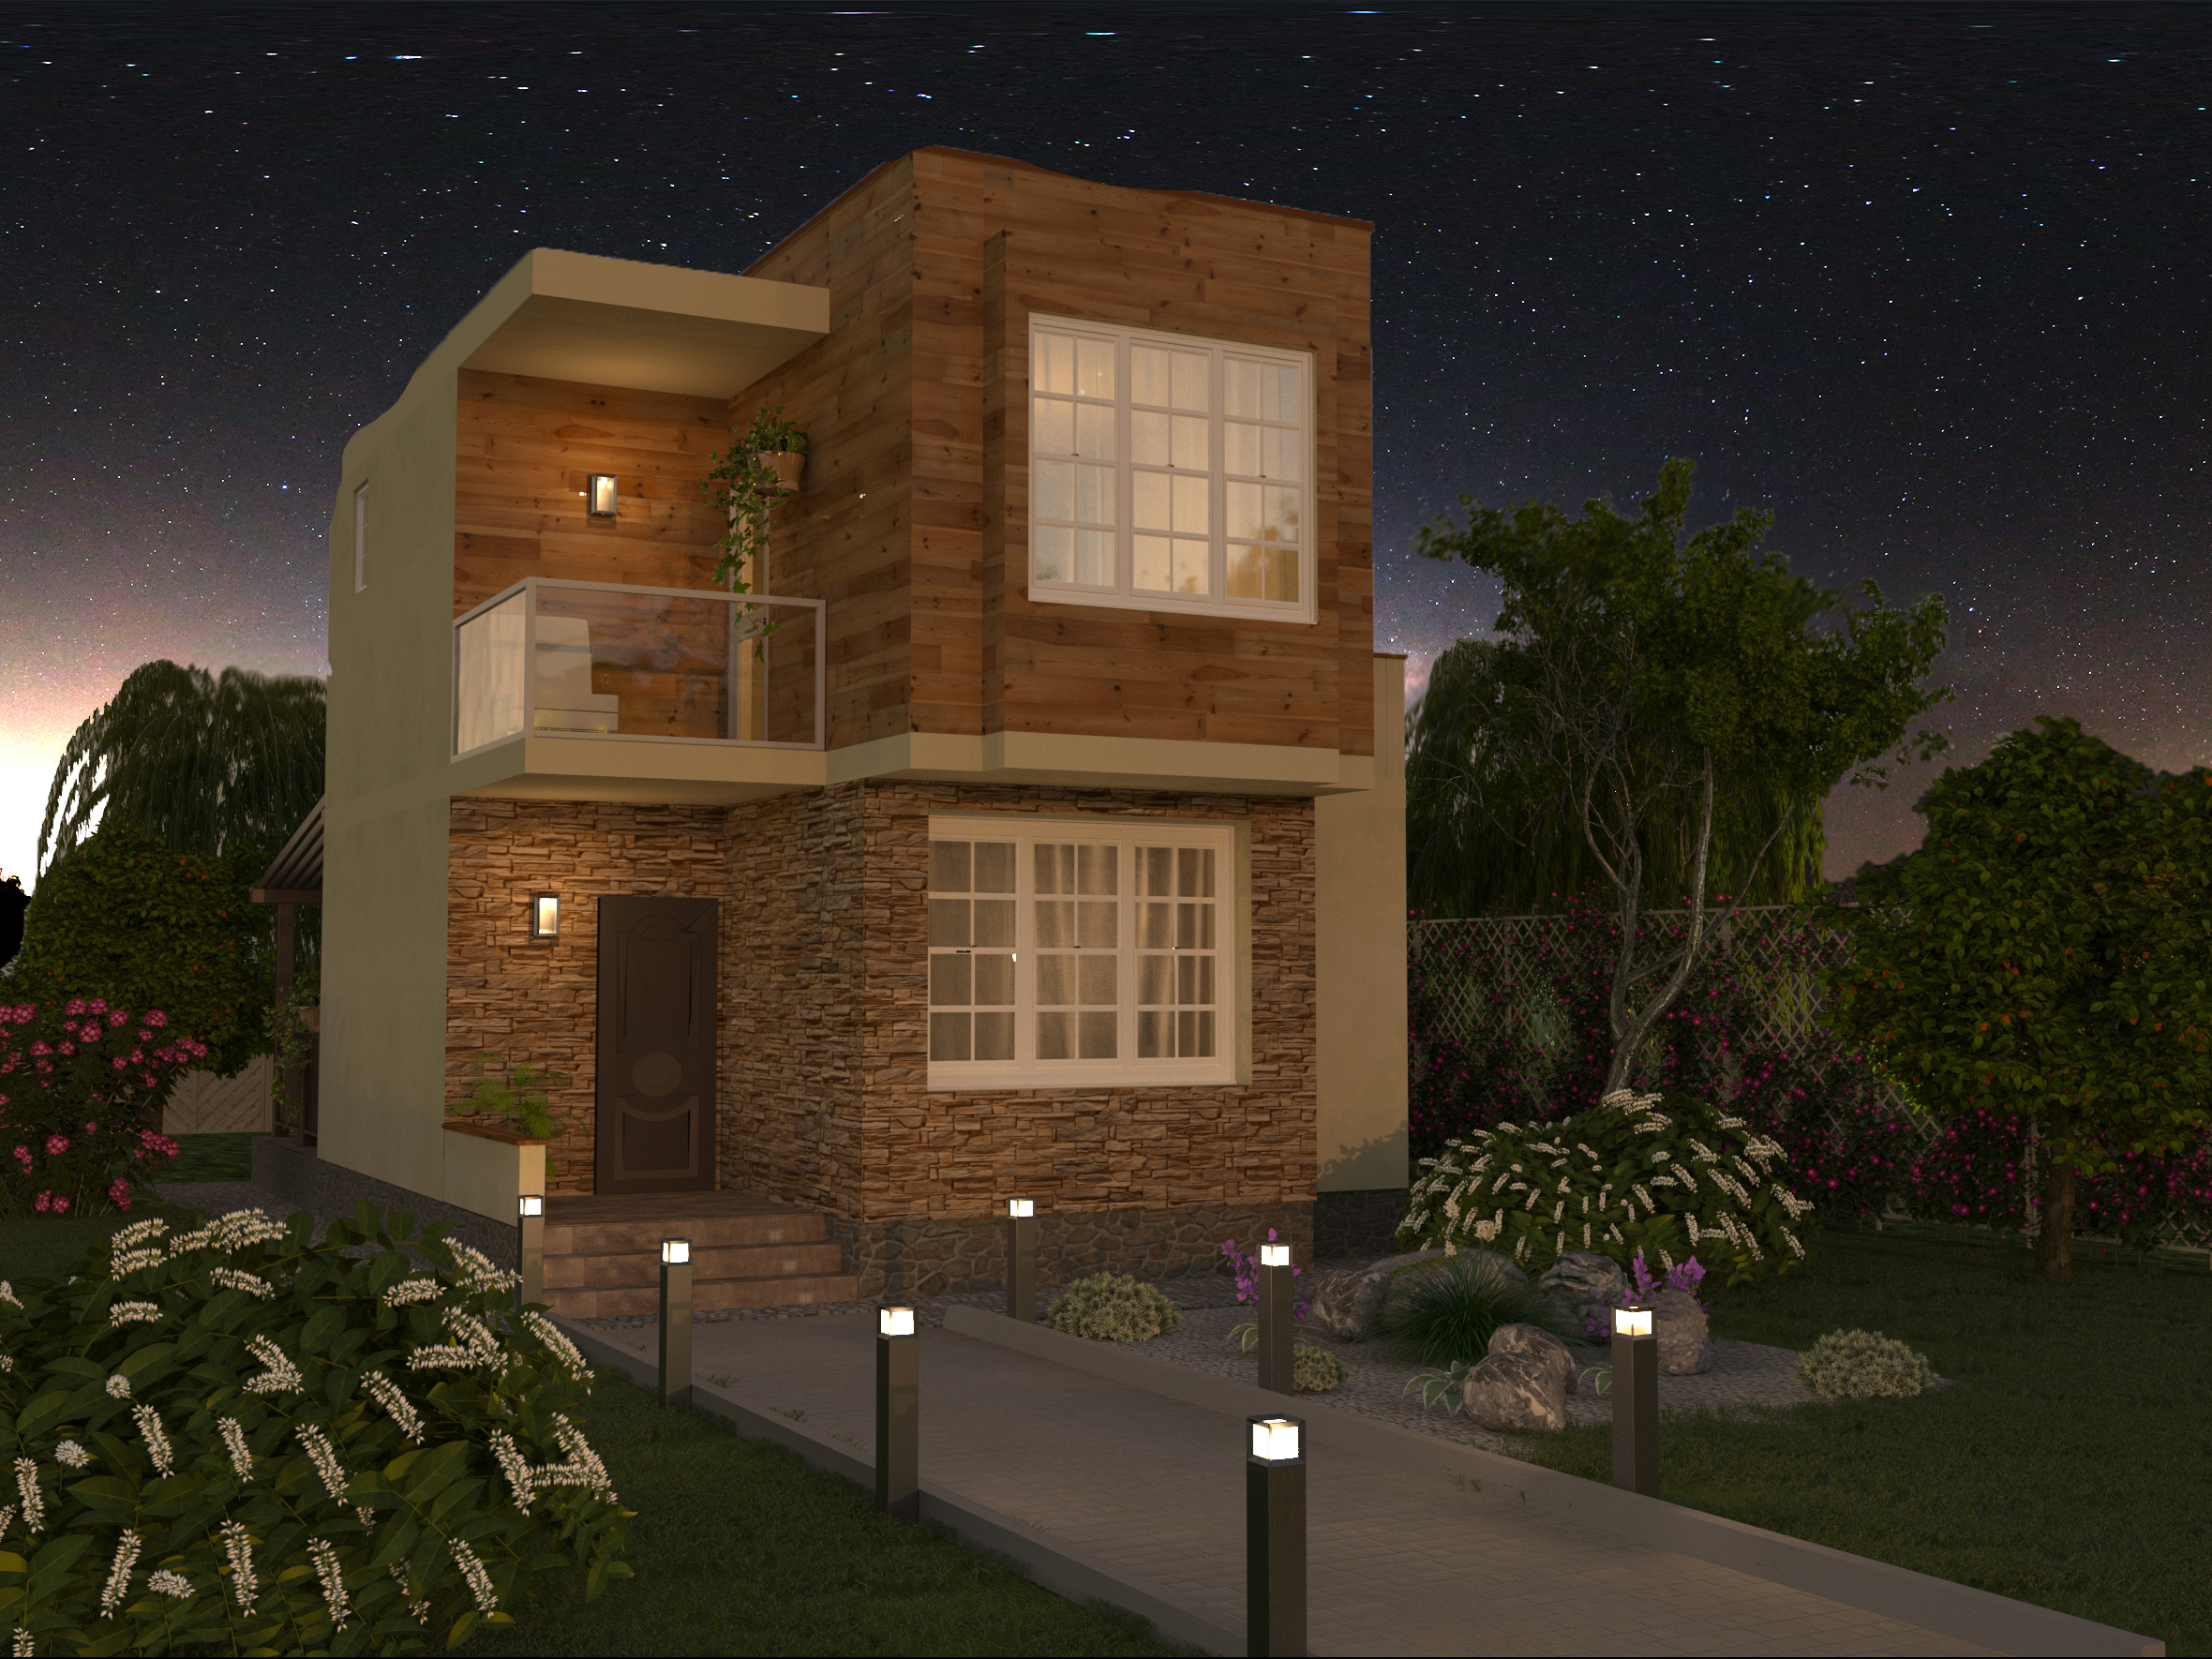 दो मंजिला घर 6,5x7,5 मी 3d max corona render में प्रस्तुत छवि